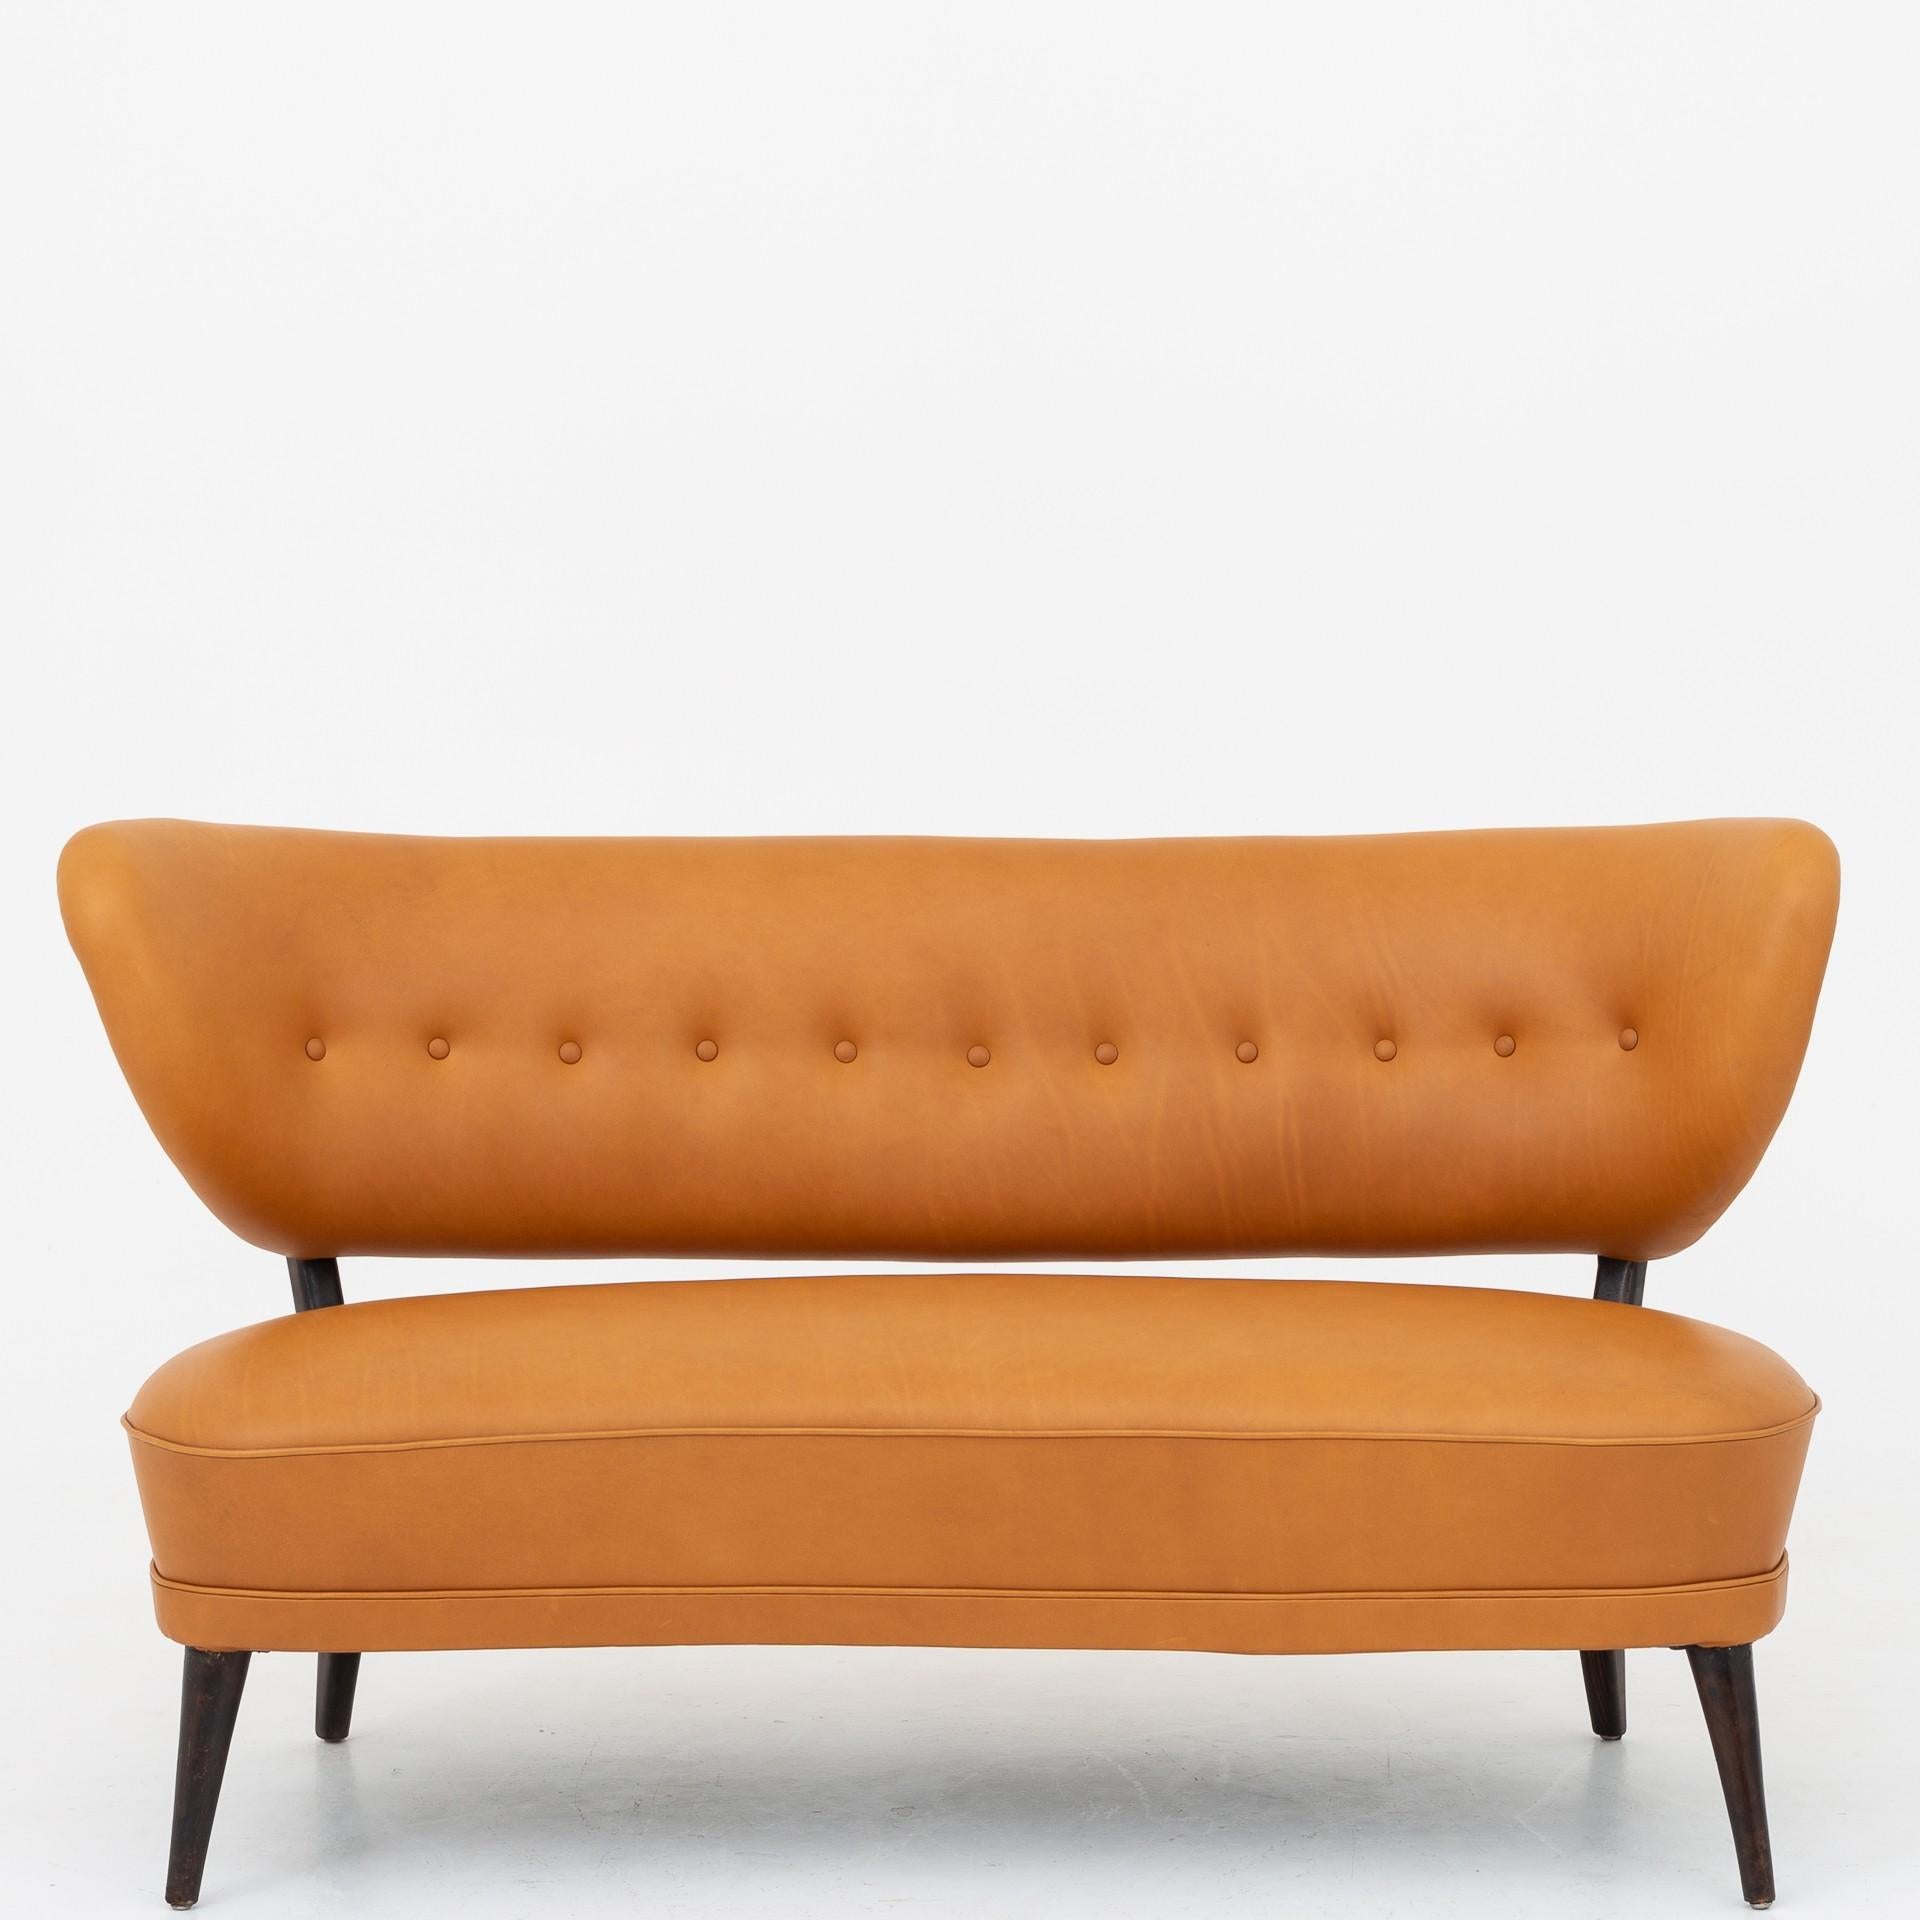 Swedish Sofa by Otto Schultz